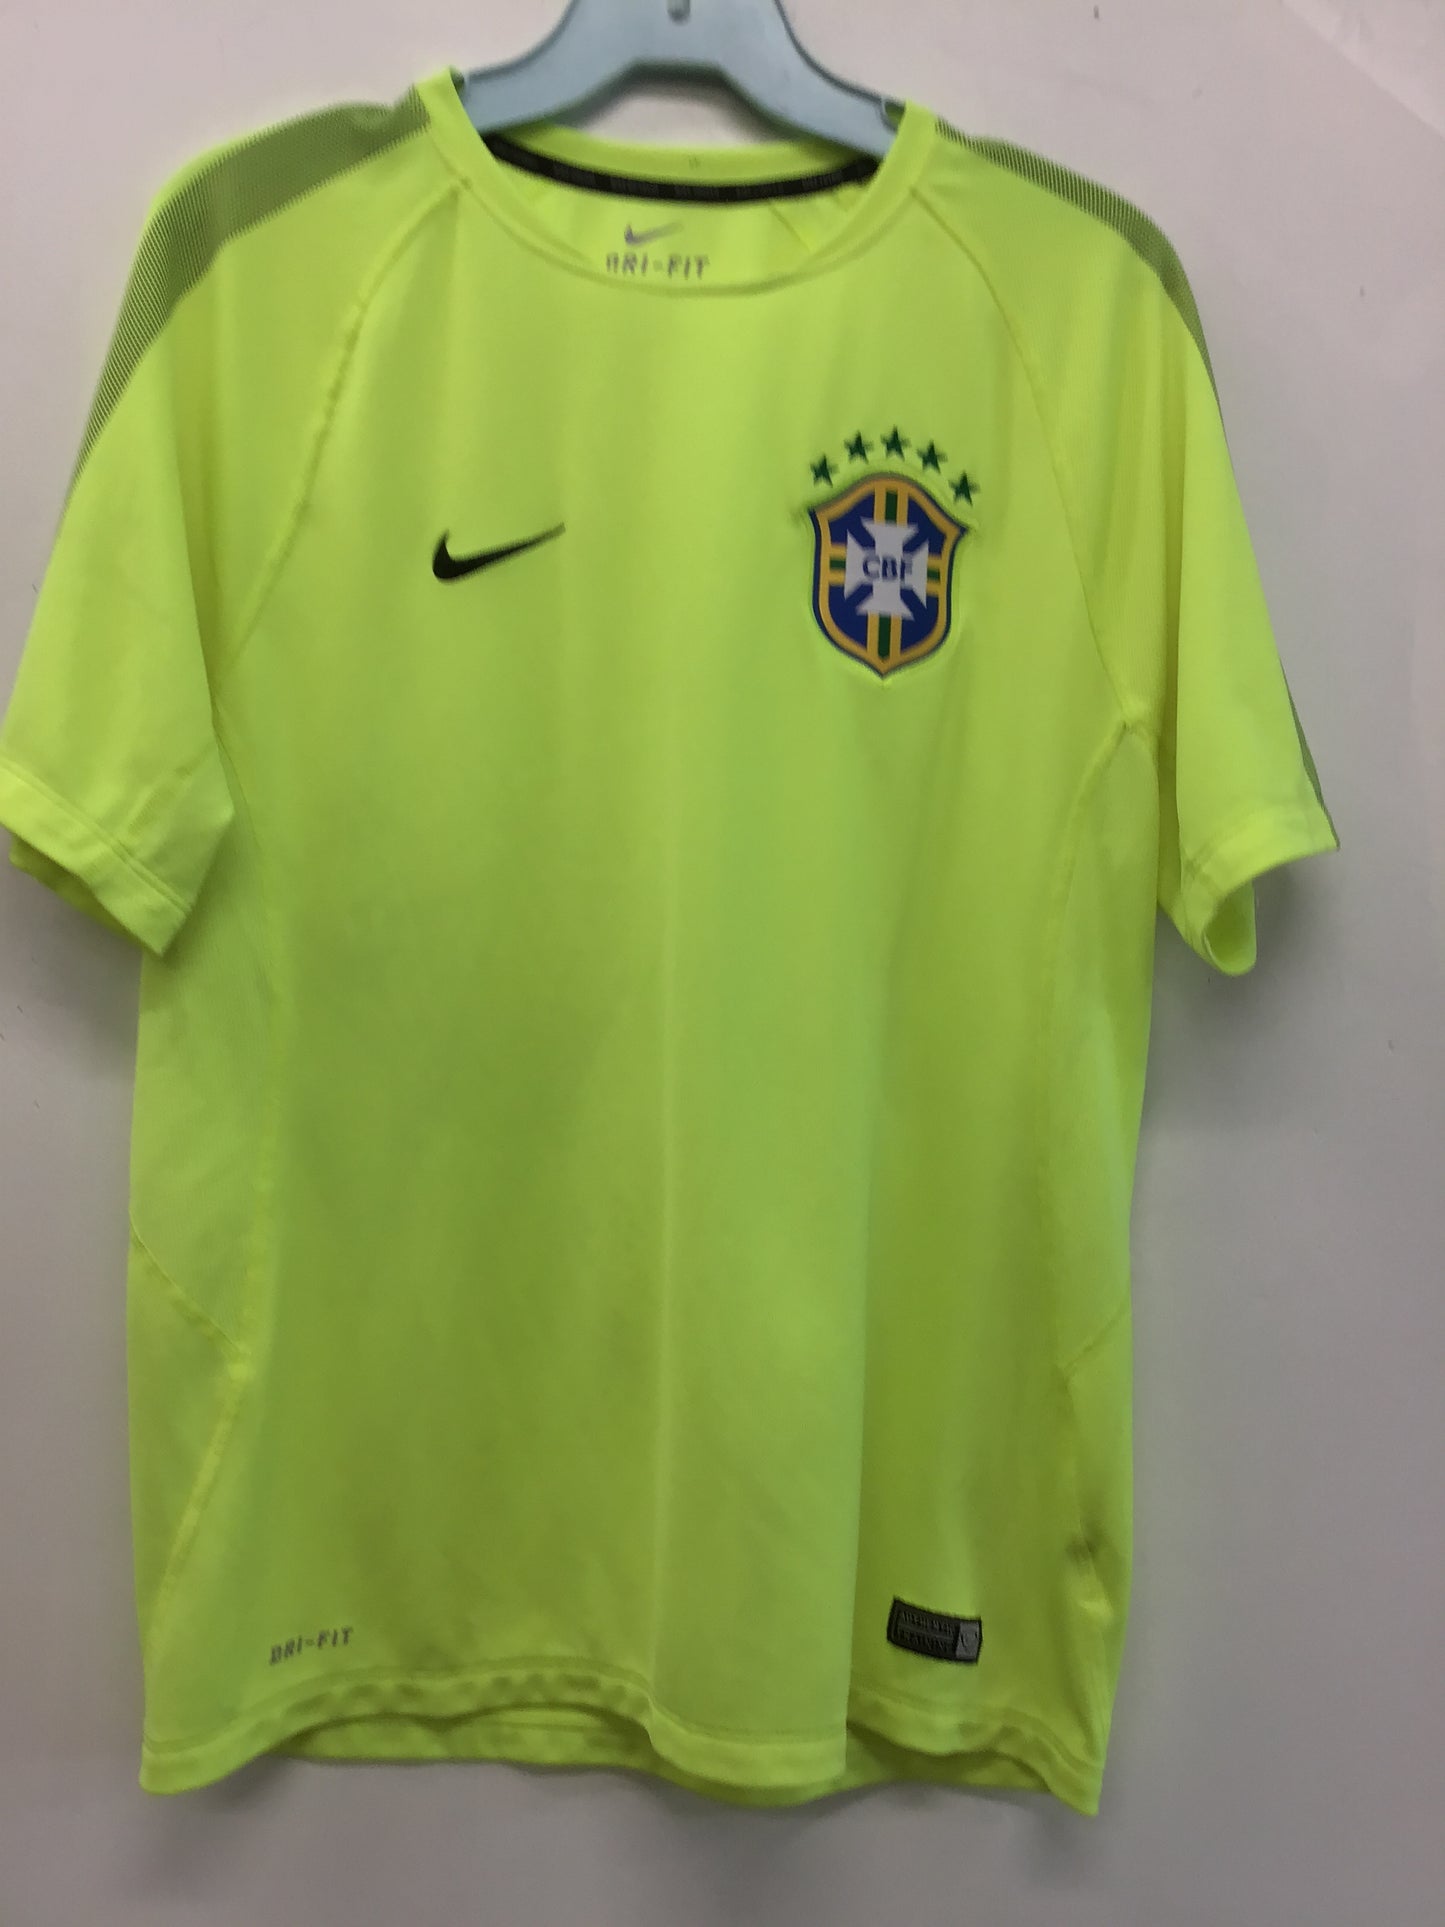 Nike Brazil CBF Jersey, Size L